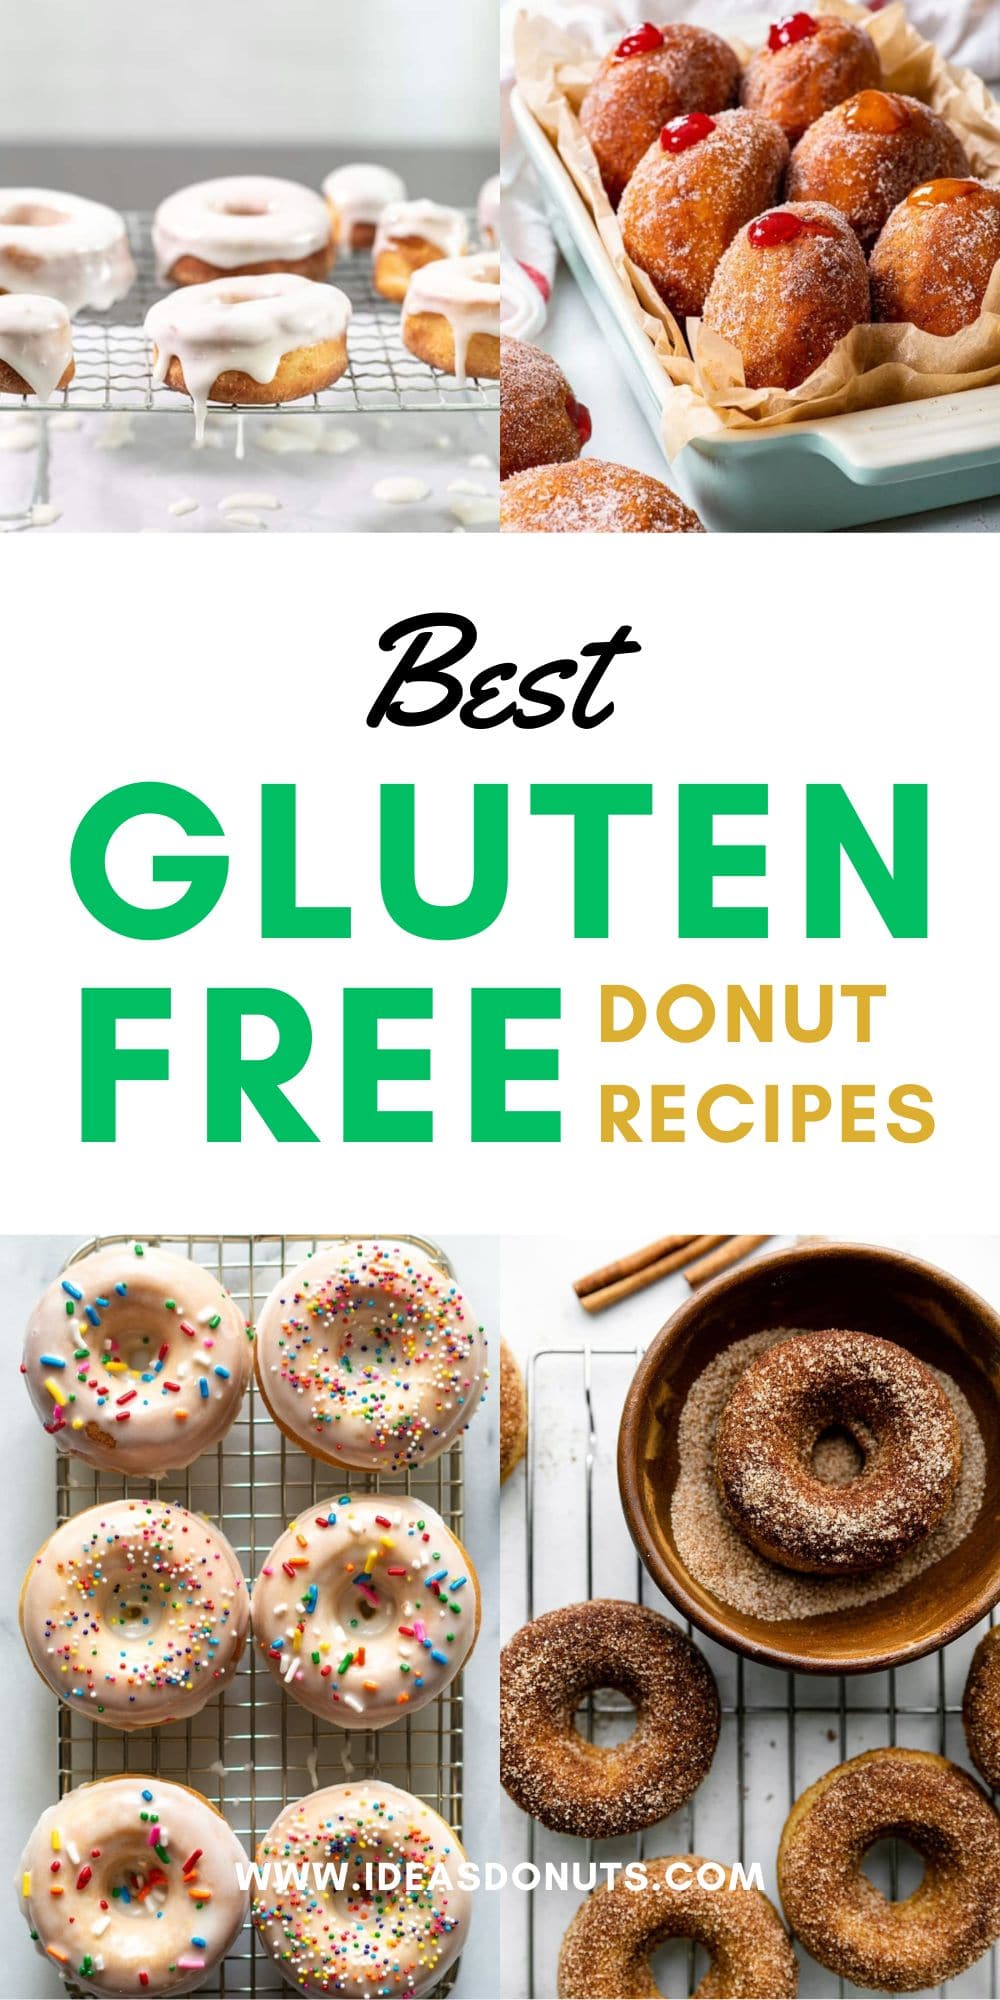 Best Gluten-Free Donut Recipes